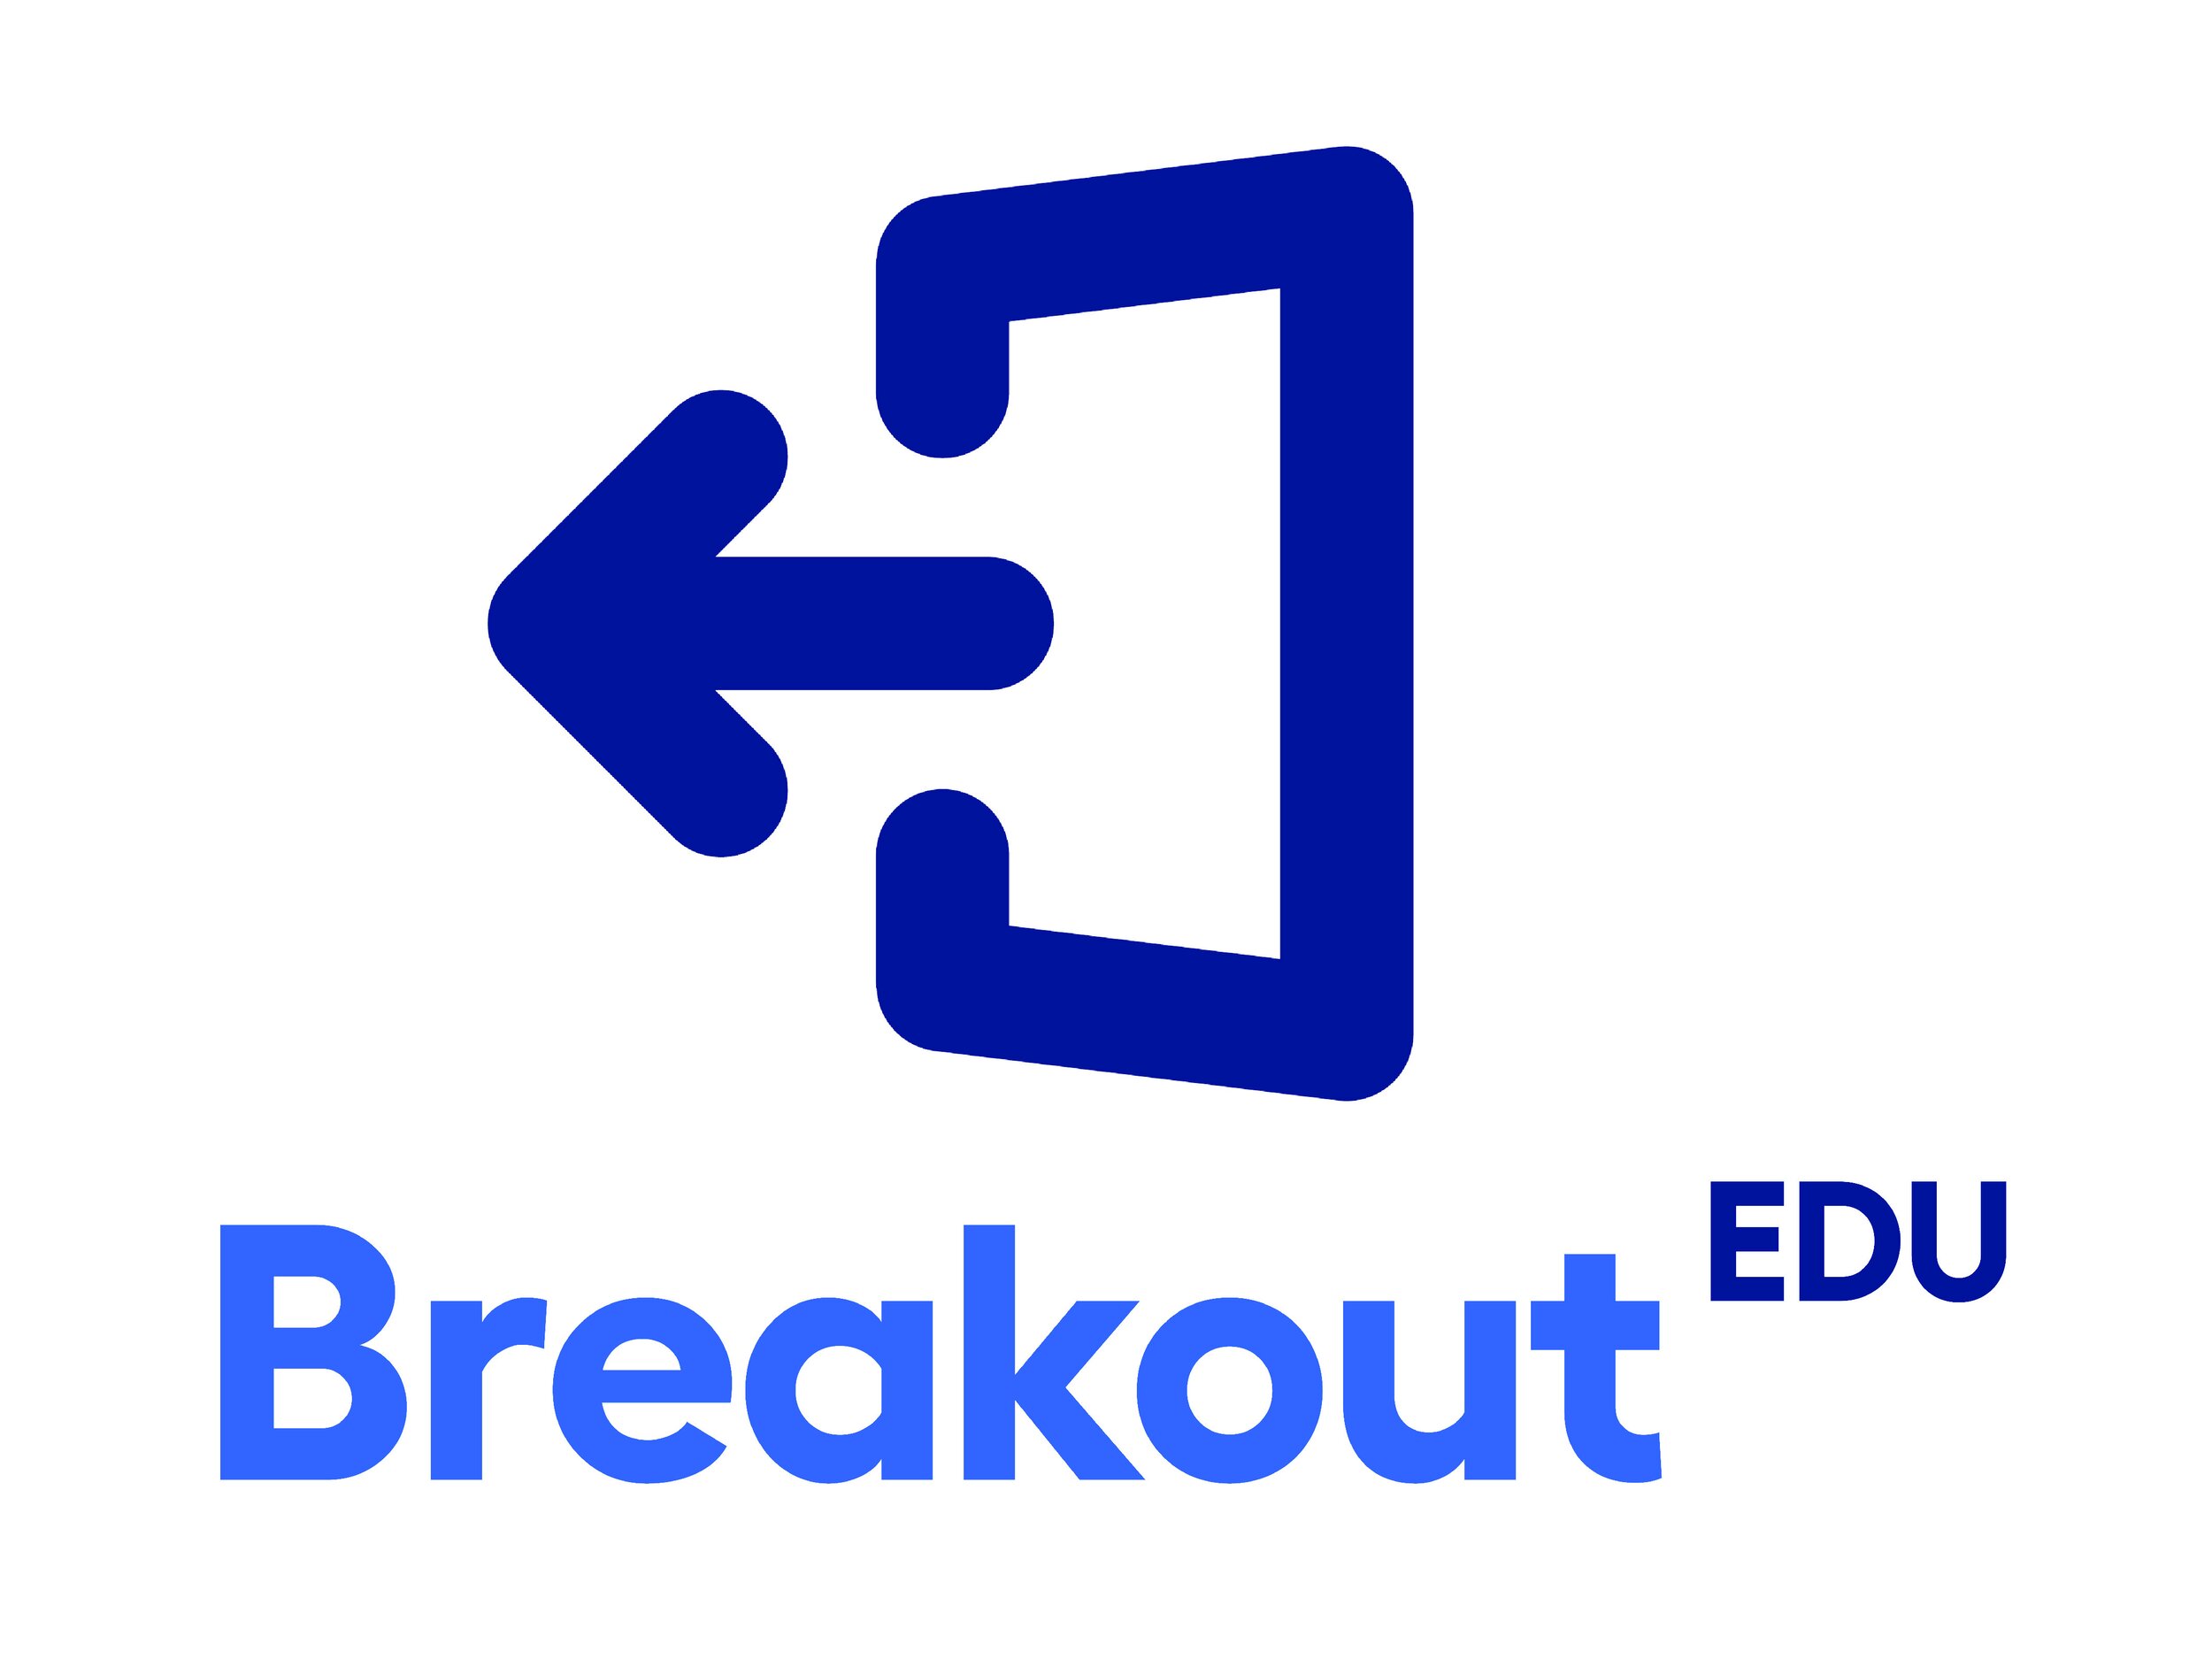 Breakout EDU.jpg